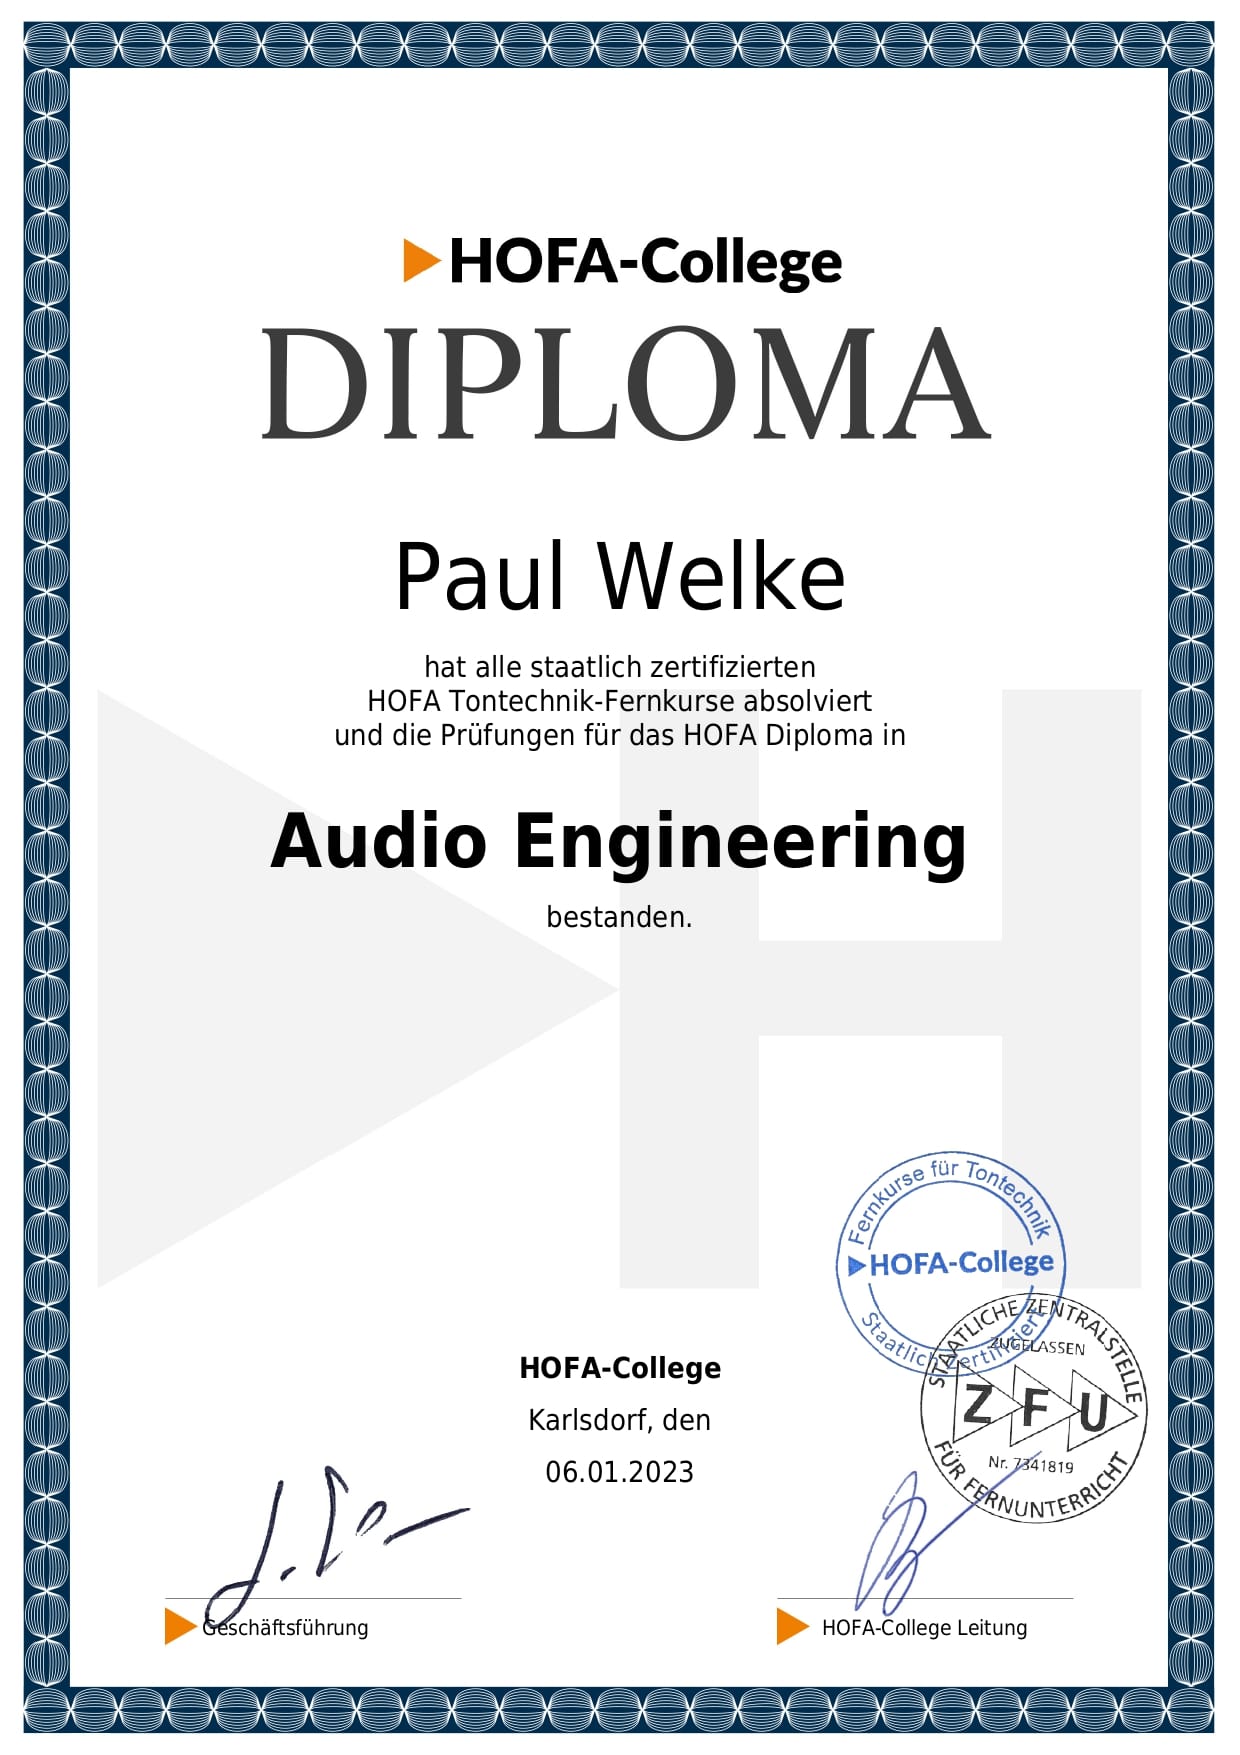 Online Mix und Mastering Zertifikat Paul Welke